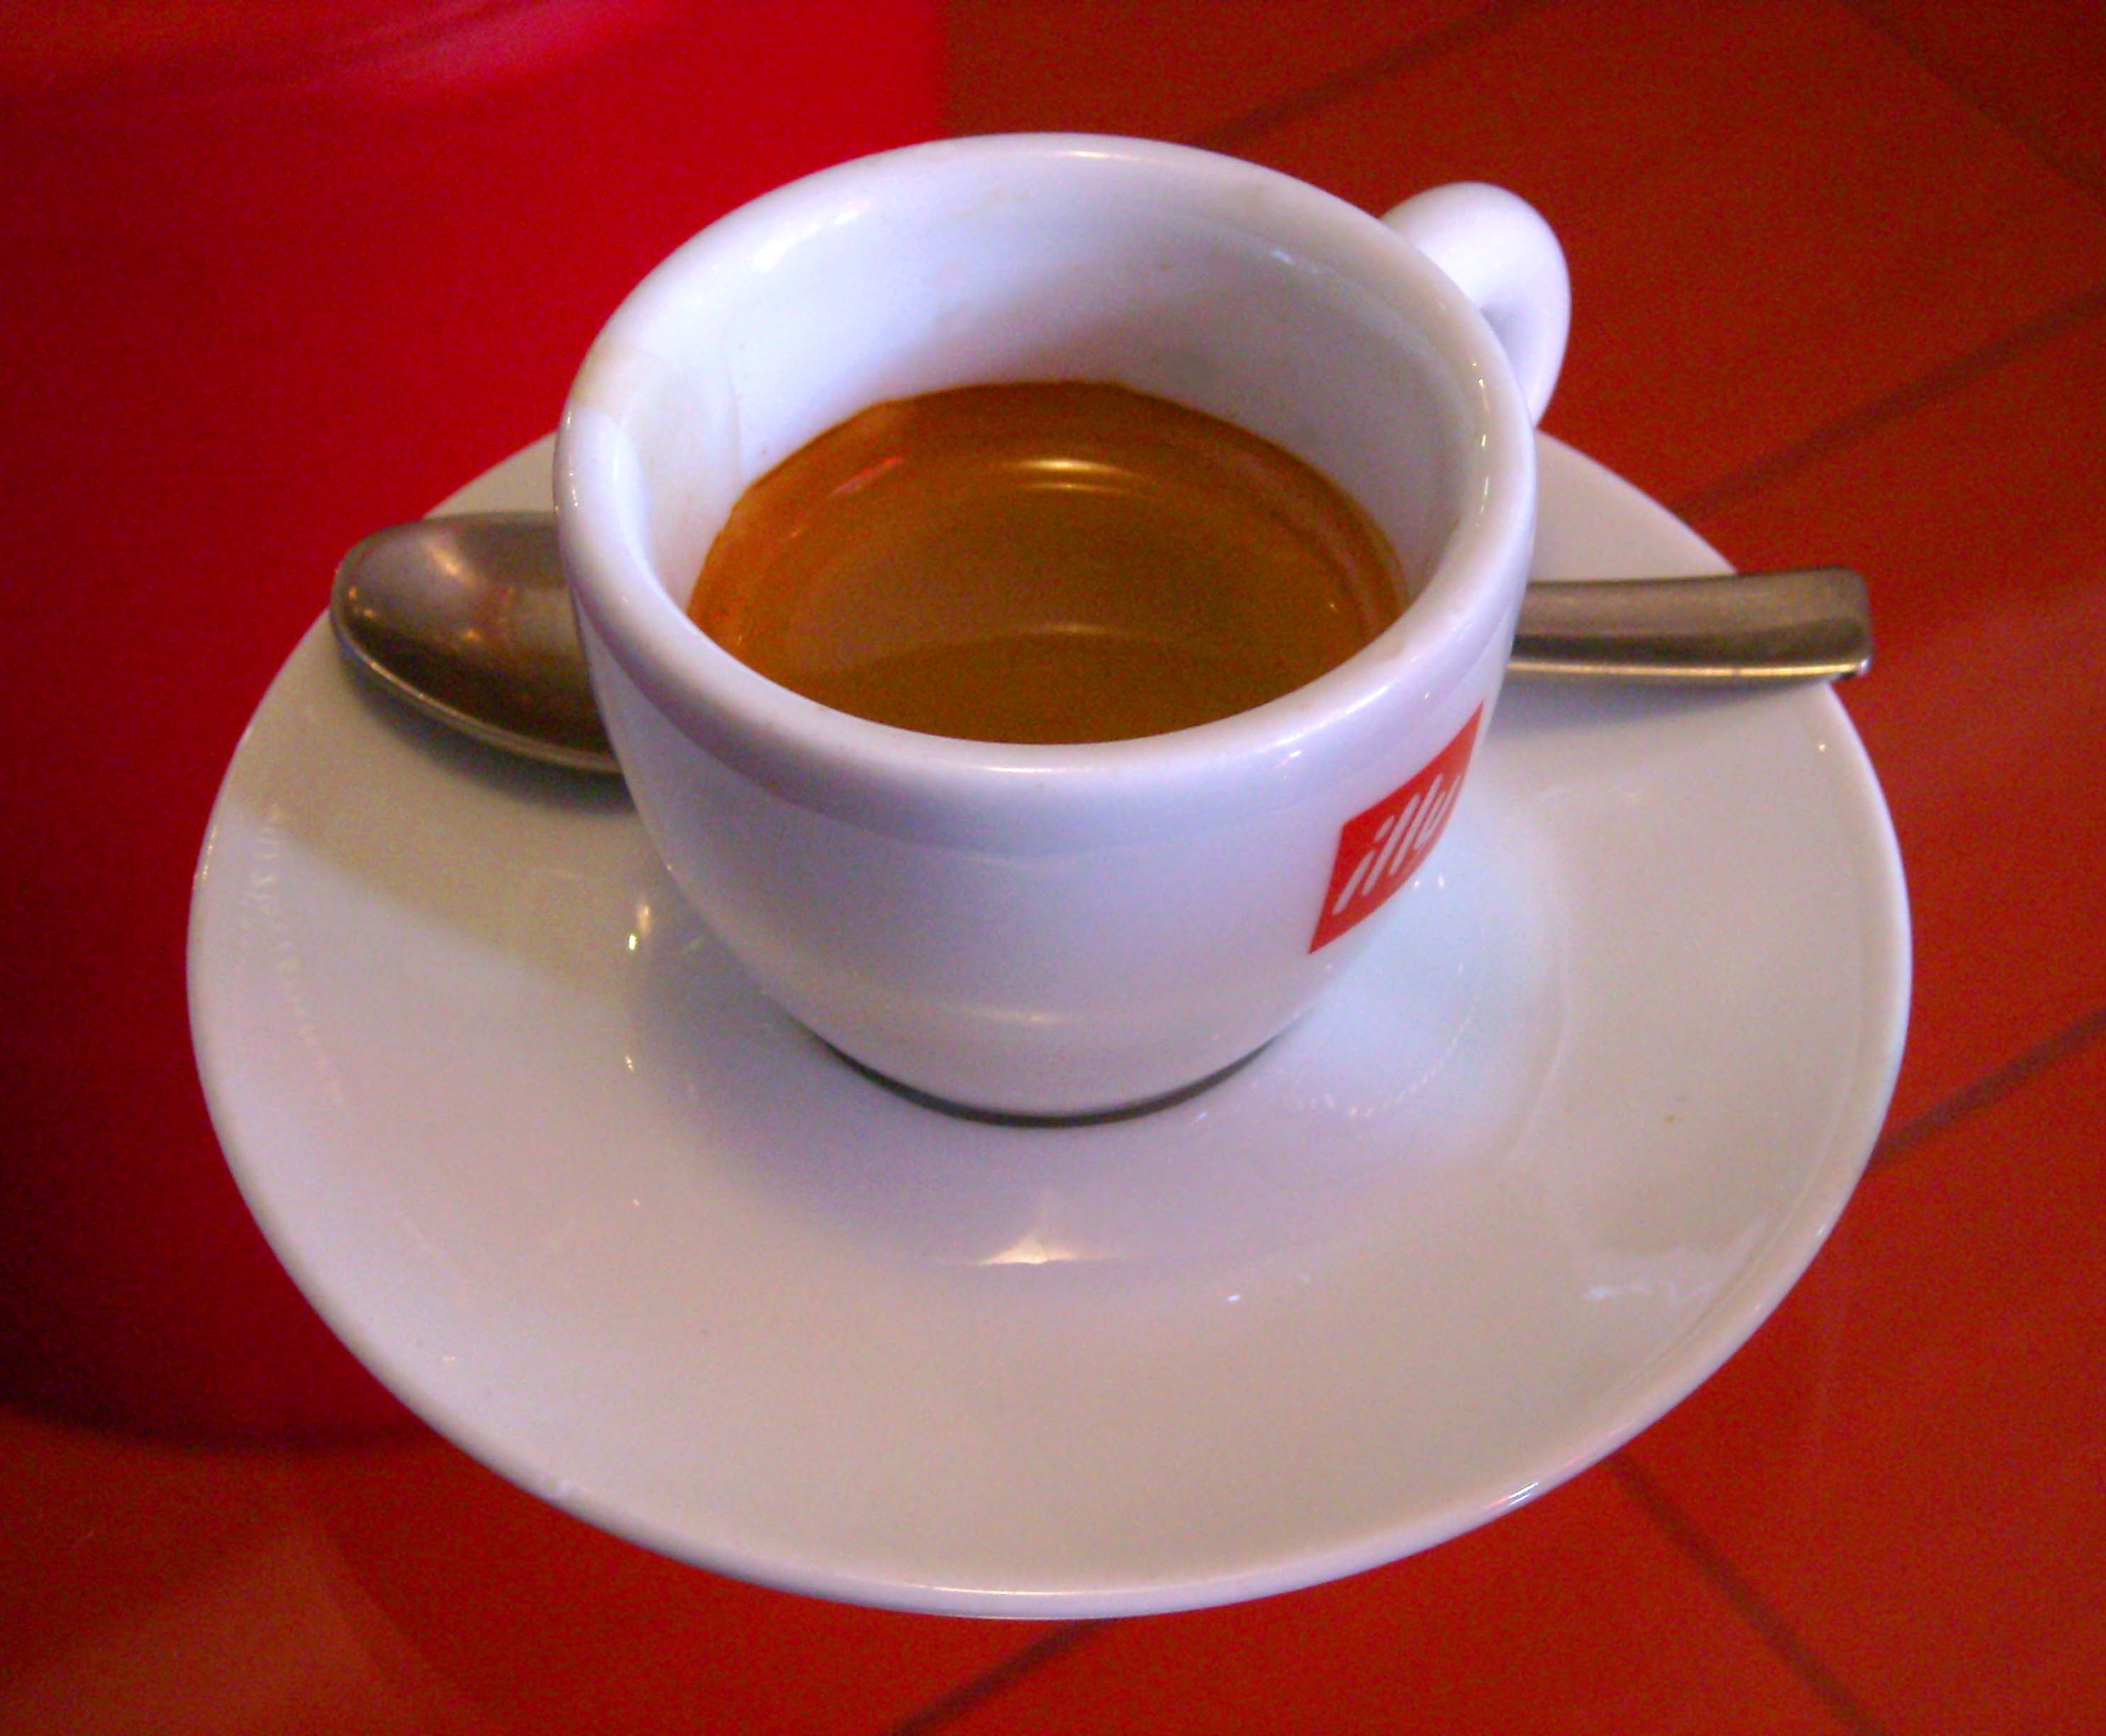 Una tazzina di caffè invitante - Benessere: lo sapevi che prendiamo il caffè nei momenti sbagliati?